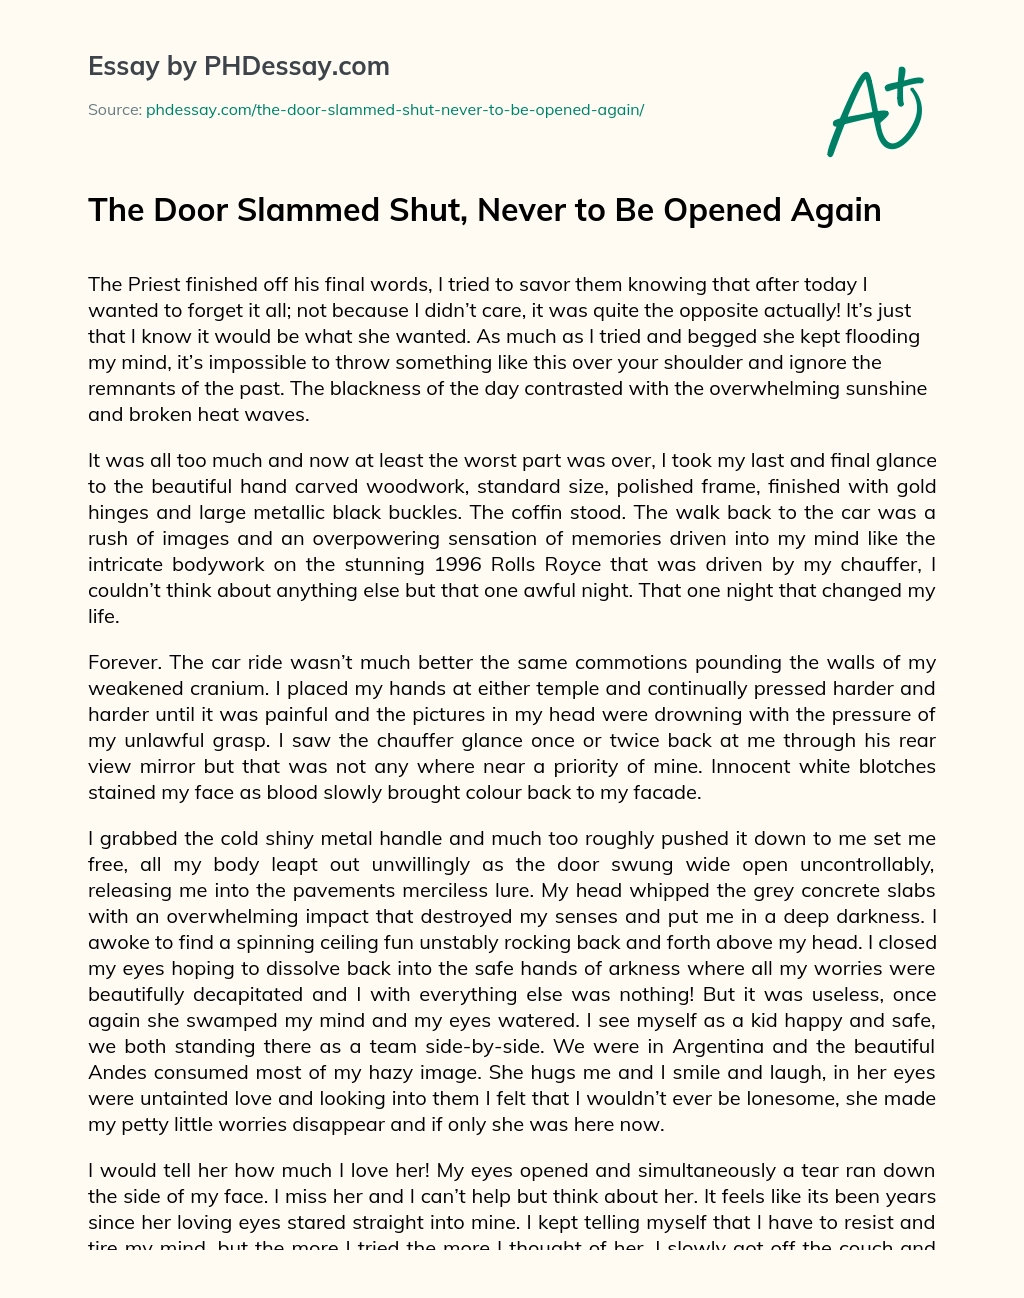 The Door Slammed Shut, Never to Be Opened Again essay